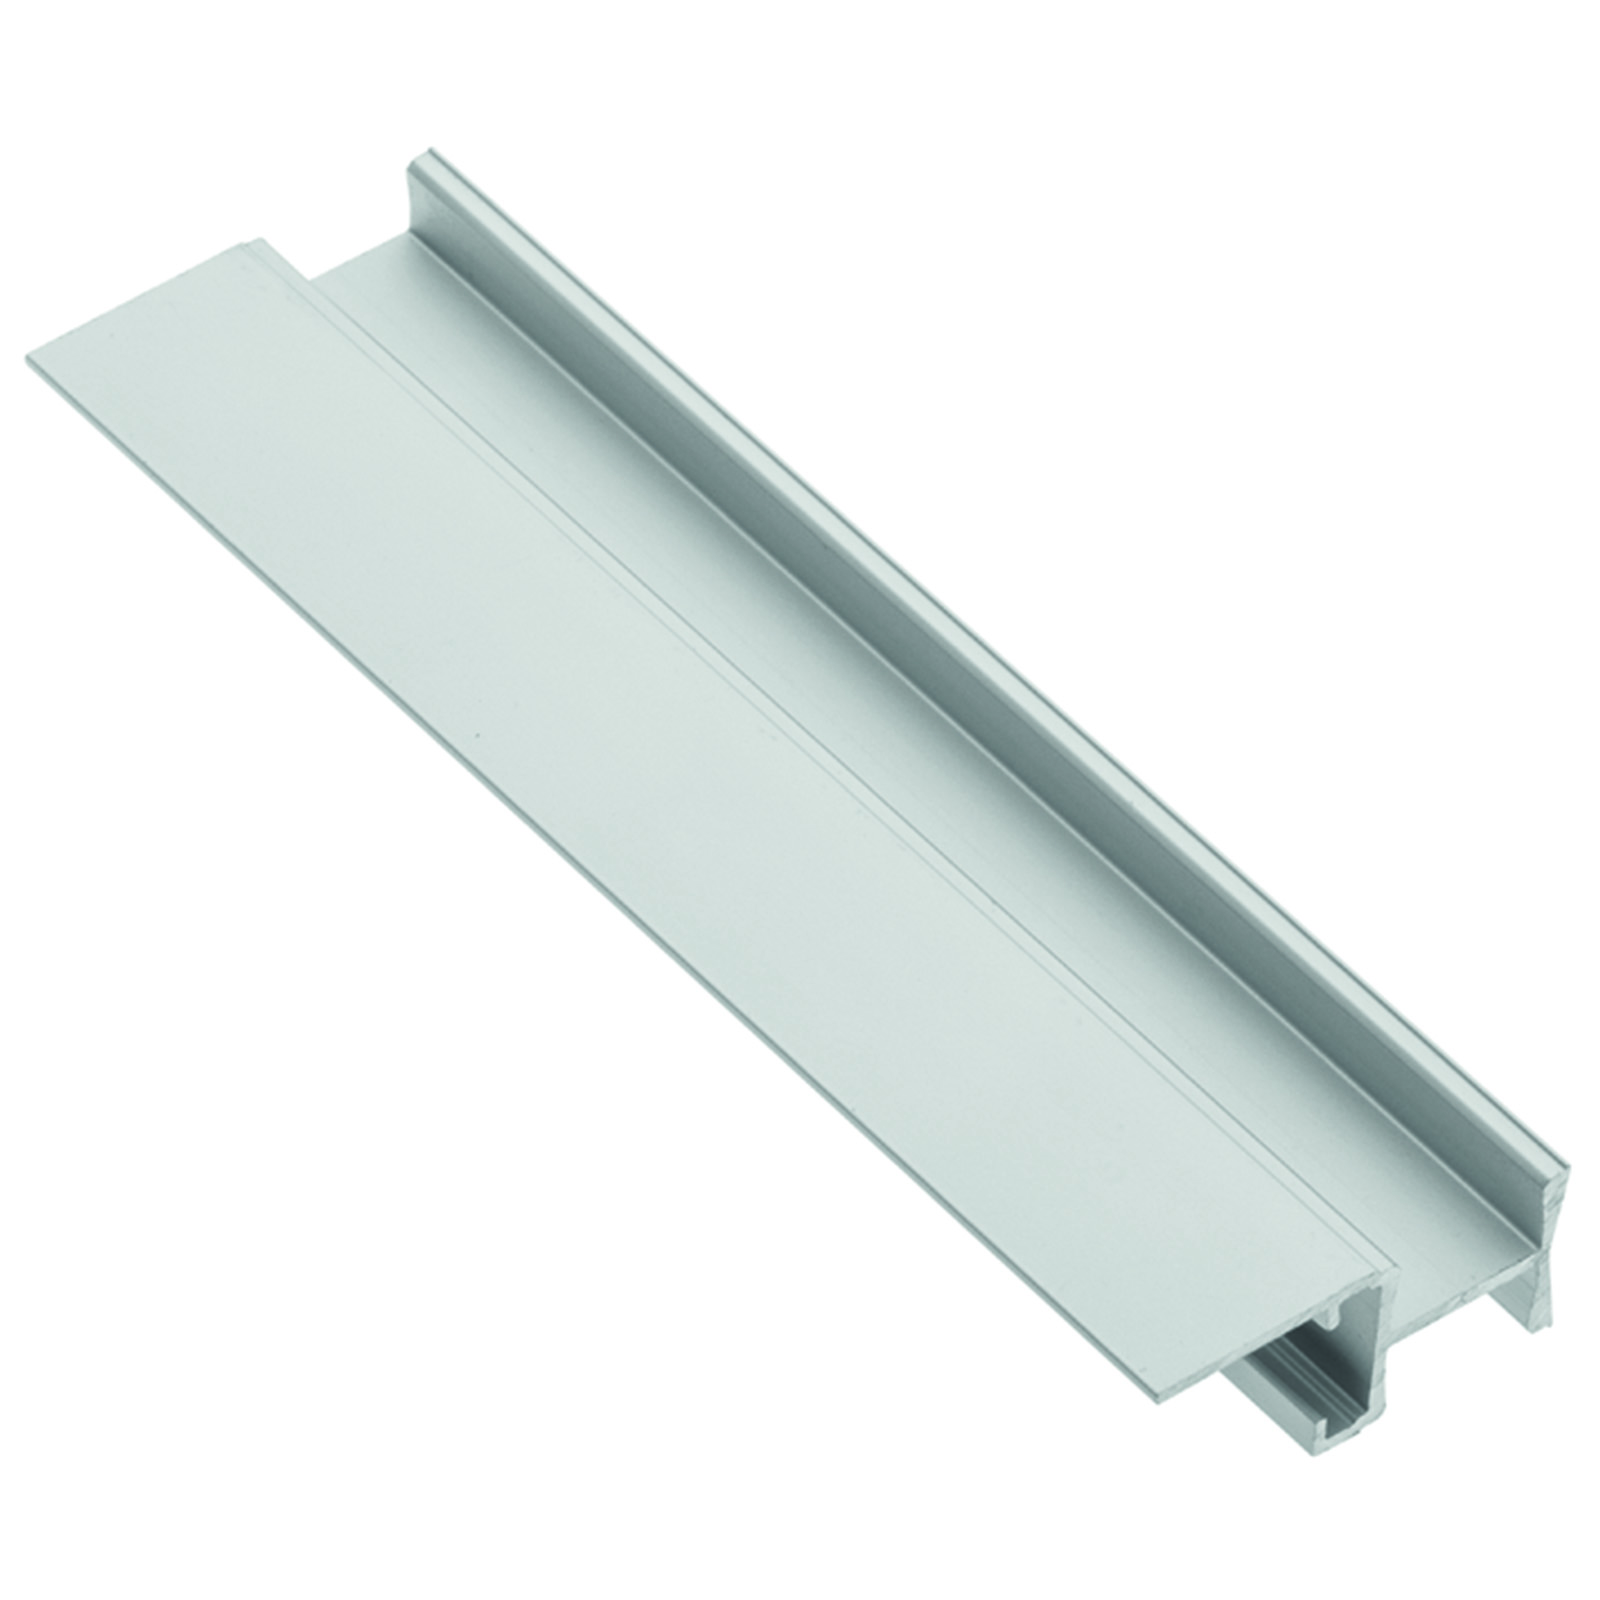 LED Profil-49 für Glasplatten 8 - 12 mm Stärke 2 m mit opaler